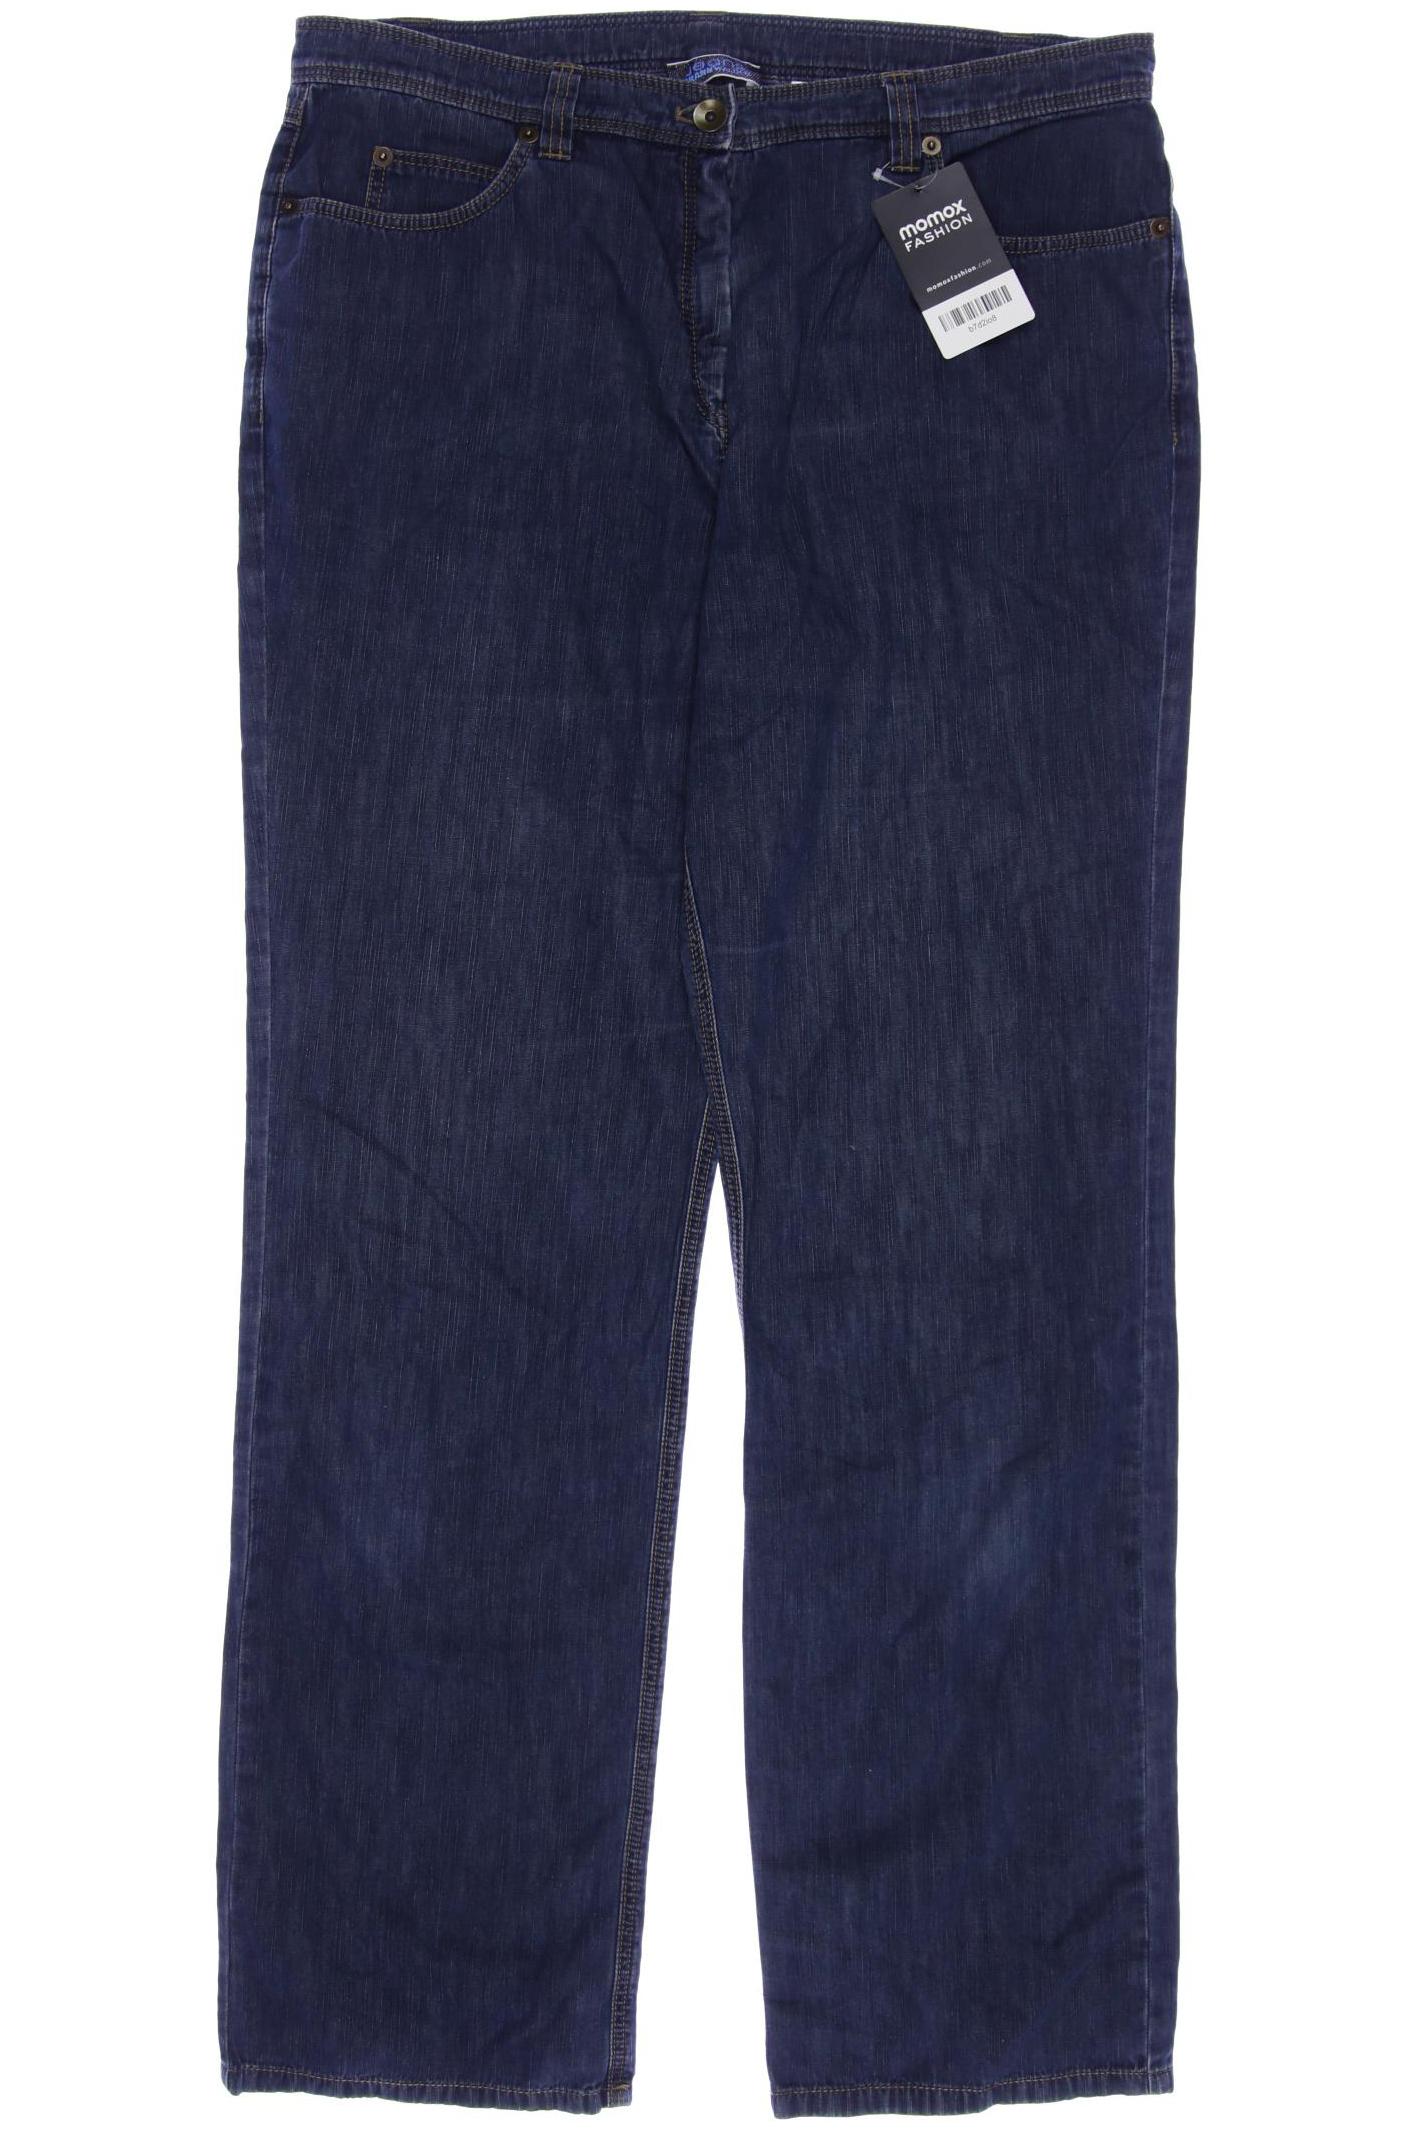 FRANK WALDER Damen Jeans, marineblau von FRANK WALDER